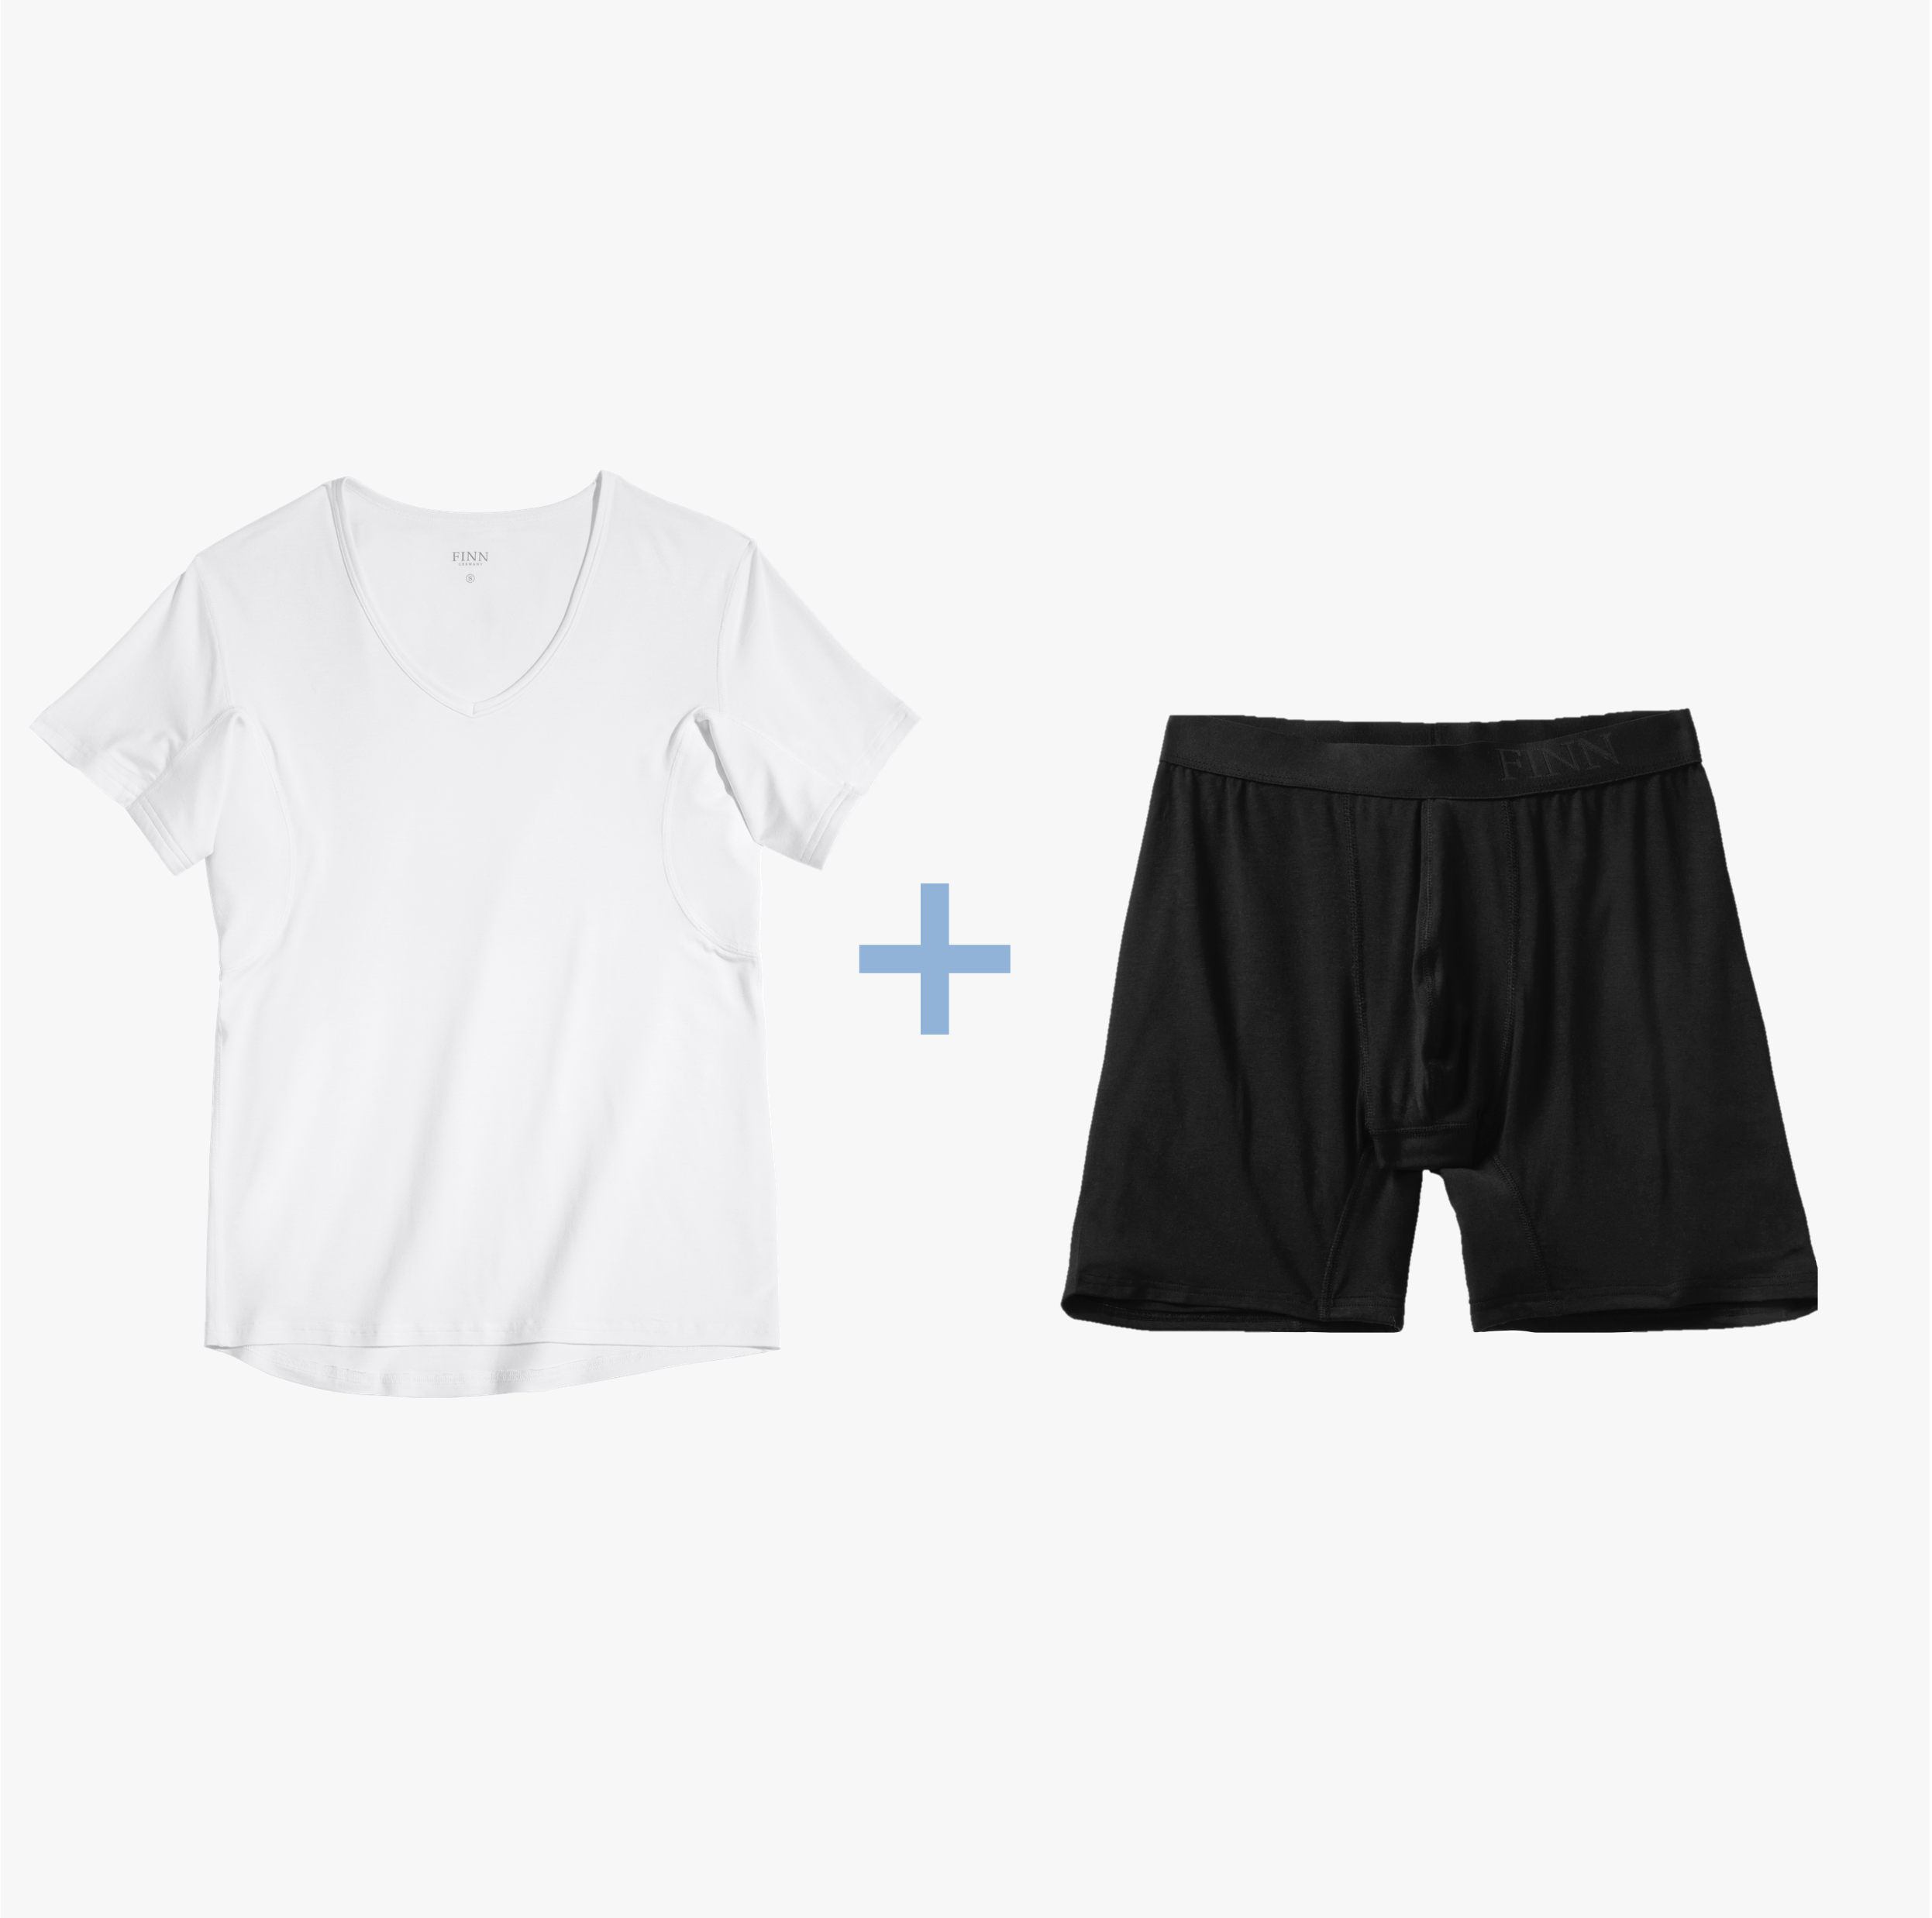 Weißes Anti-Schweiß Shirt und schwarze Boxershorts im Anti-Schweiß Unterwäsche Set. 100% Schutz vor Schweißflecken, 3-Lagen Technologie, zertifizierter Tragekomfort.